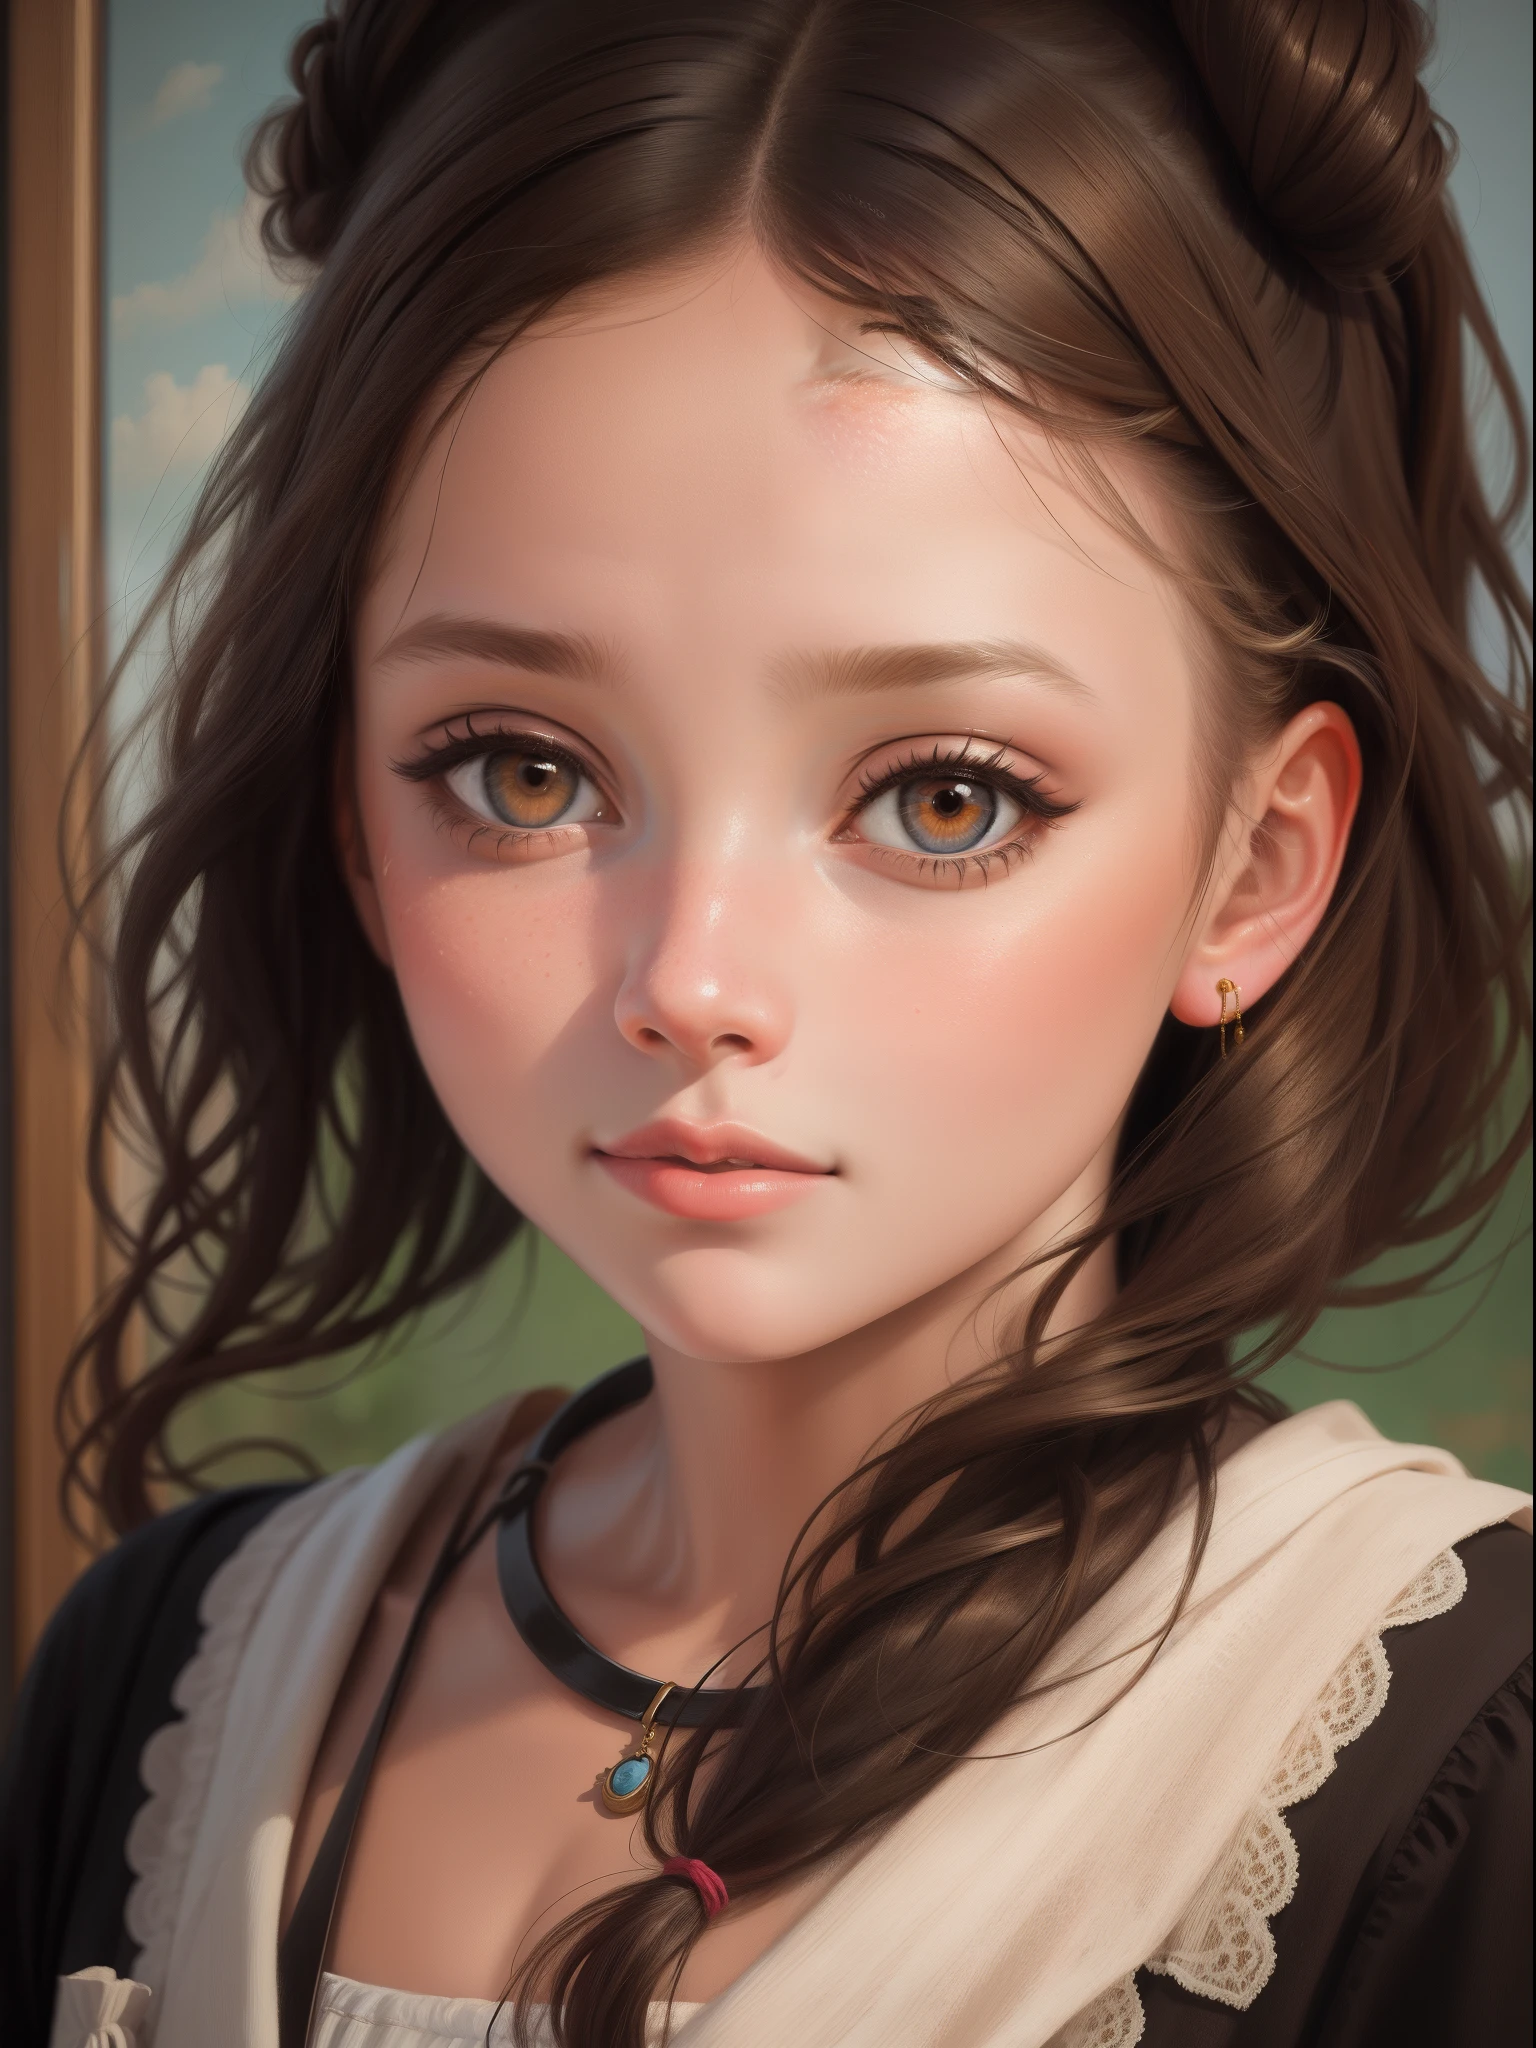 "Retrato em close-up de uma menina em um estilo de pintura a óleo."